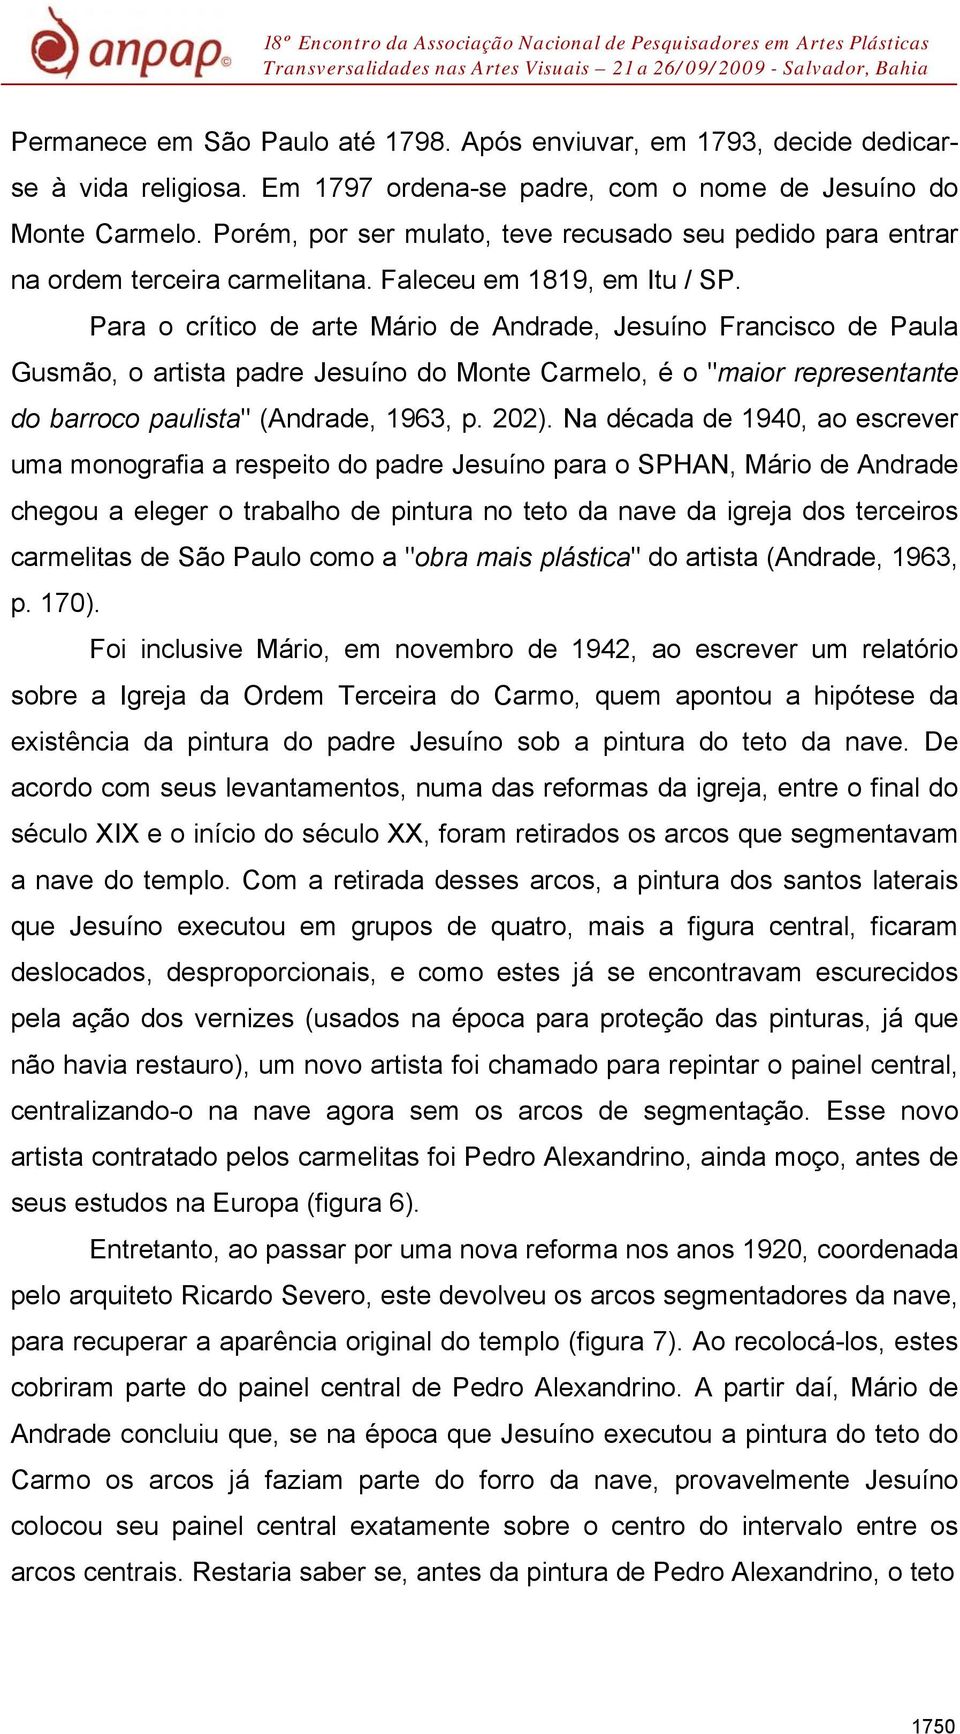 Para o crítico de arte Mário de Andrade, Jesuíno Francisco de Paula Gusmão, o artista padre Jesuíno do Monte Carmelo, é o "maior representante do barroco paulista" (Andrade, 1963, p. 202).